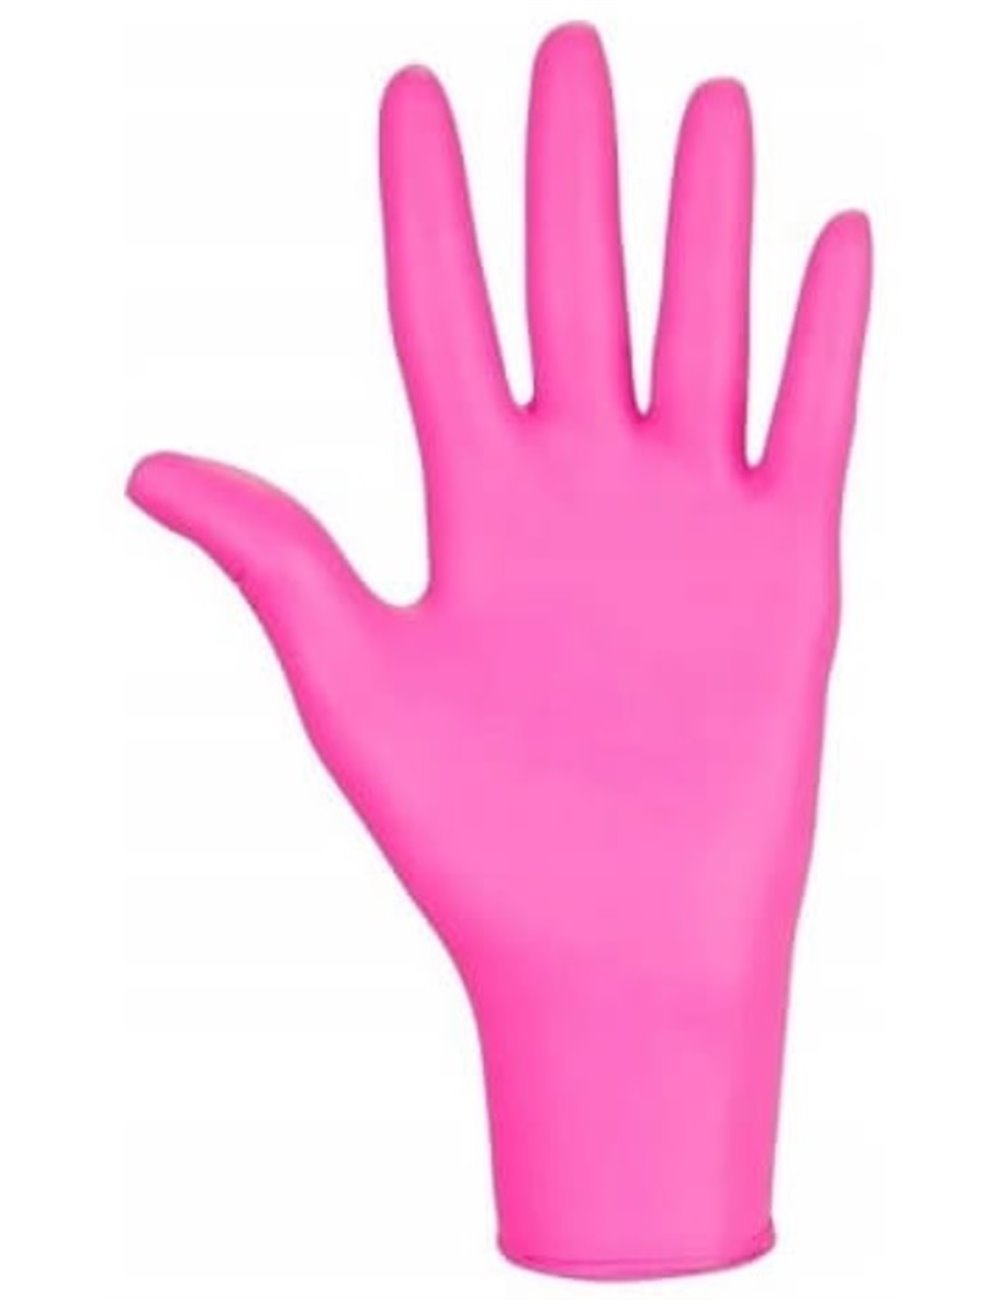 Rękawice Diagnostyczne Jednorazowe, Nitrylowe, Bezpudrowe Różowe (rozmiar M) 100 szt